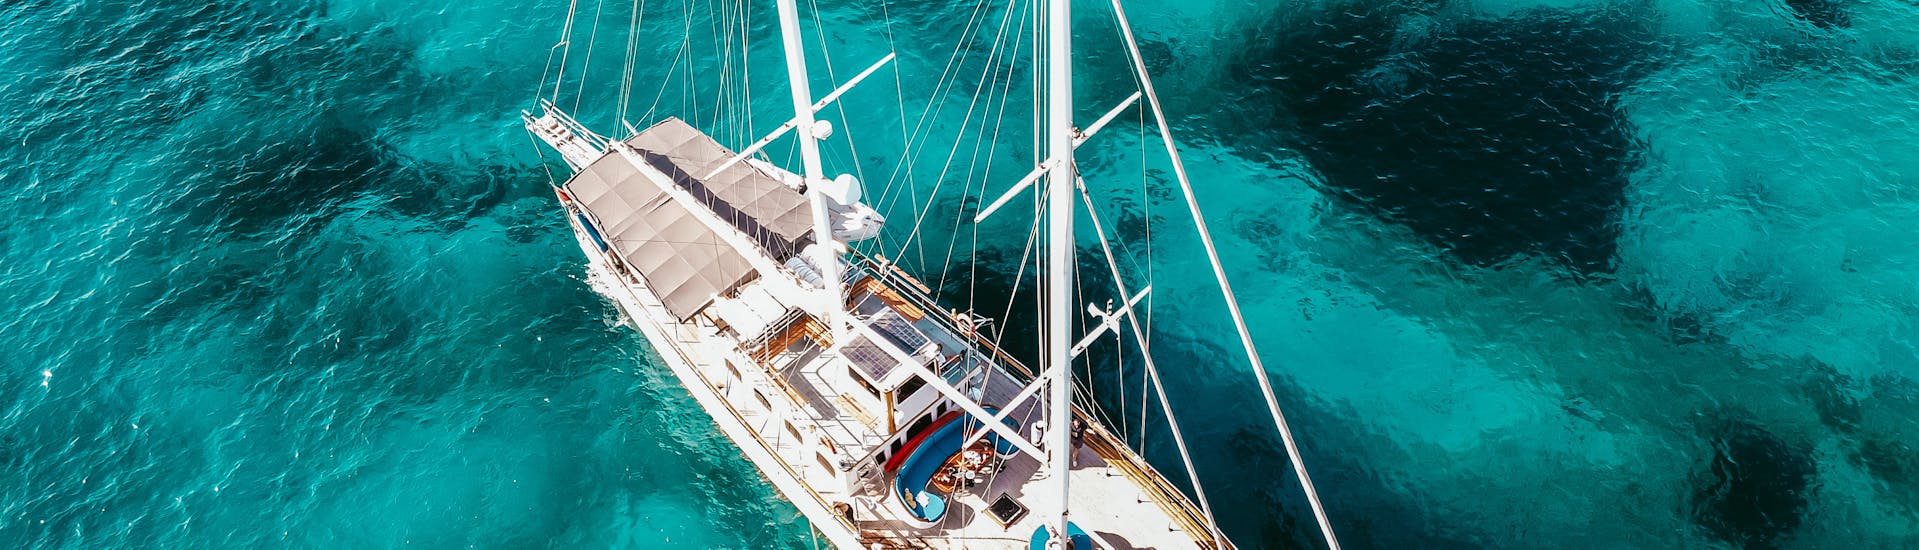 Gita in caicco a 3 baie con sosta alla Laguna Blu e Comino da Sliema con Hera Cruises Sliema.